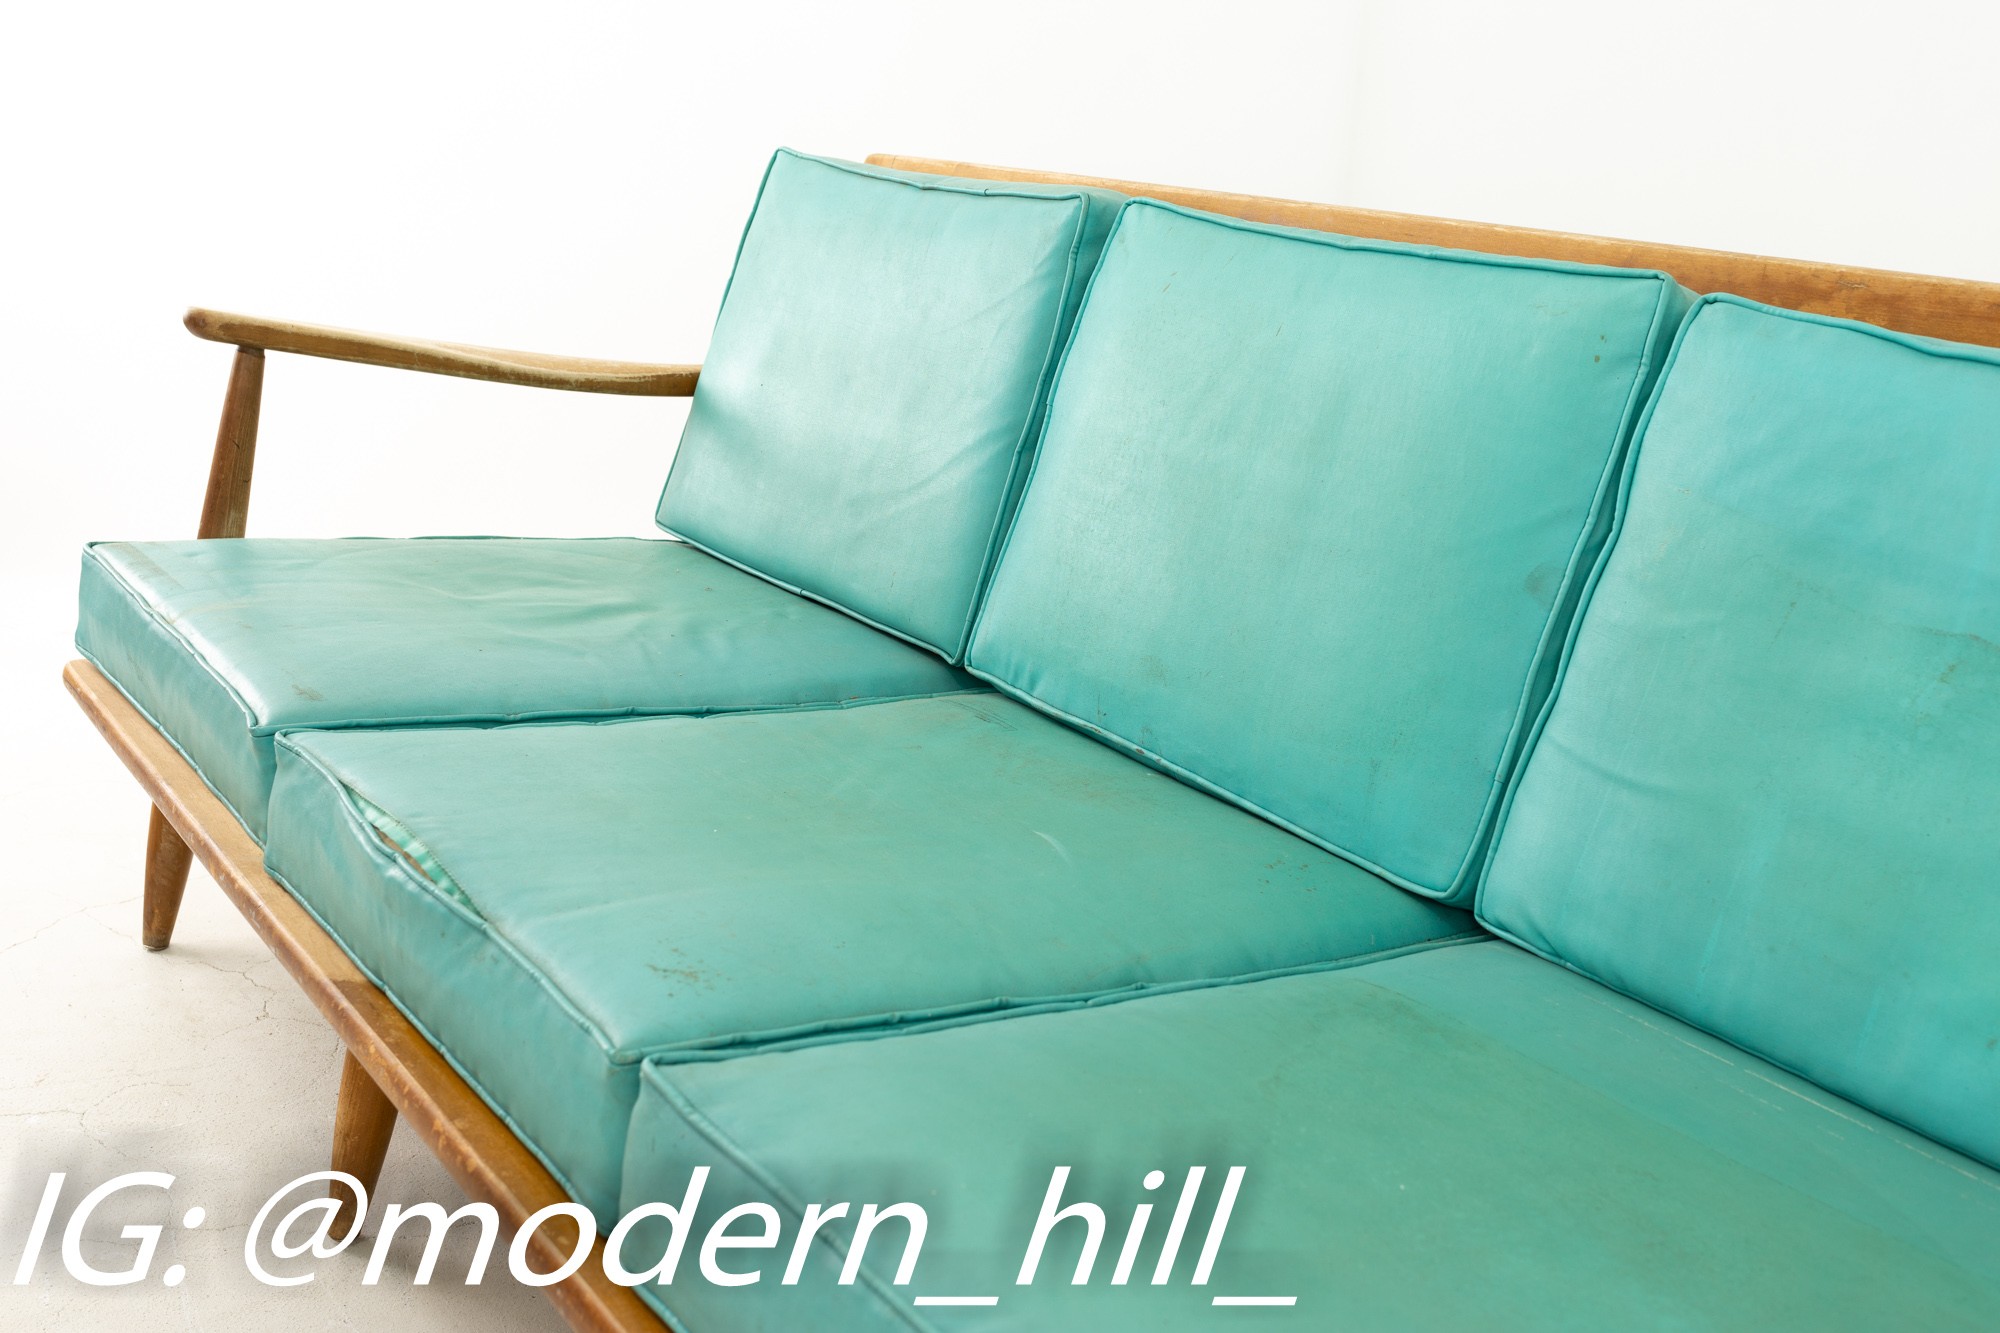 Kofod Larsen Style Mid Century Teal 3 Seater Sofa